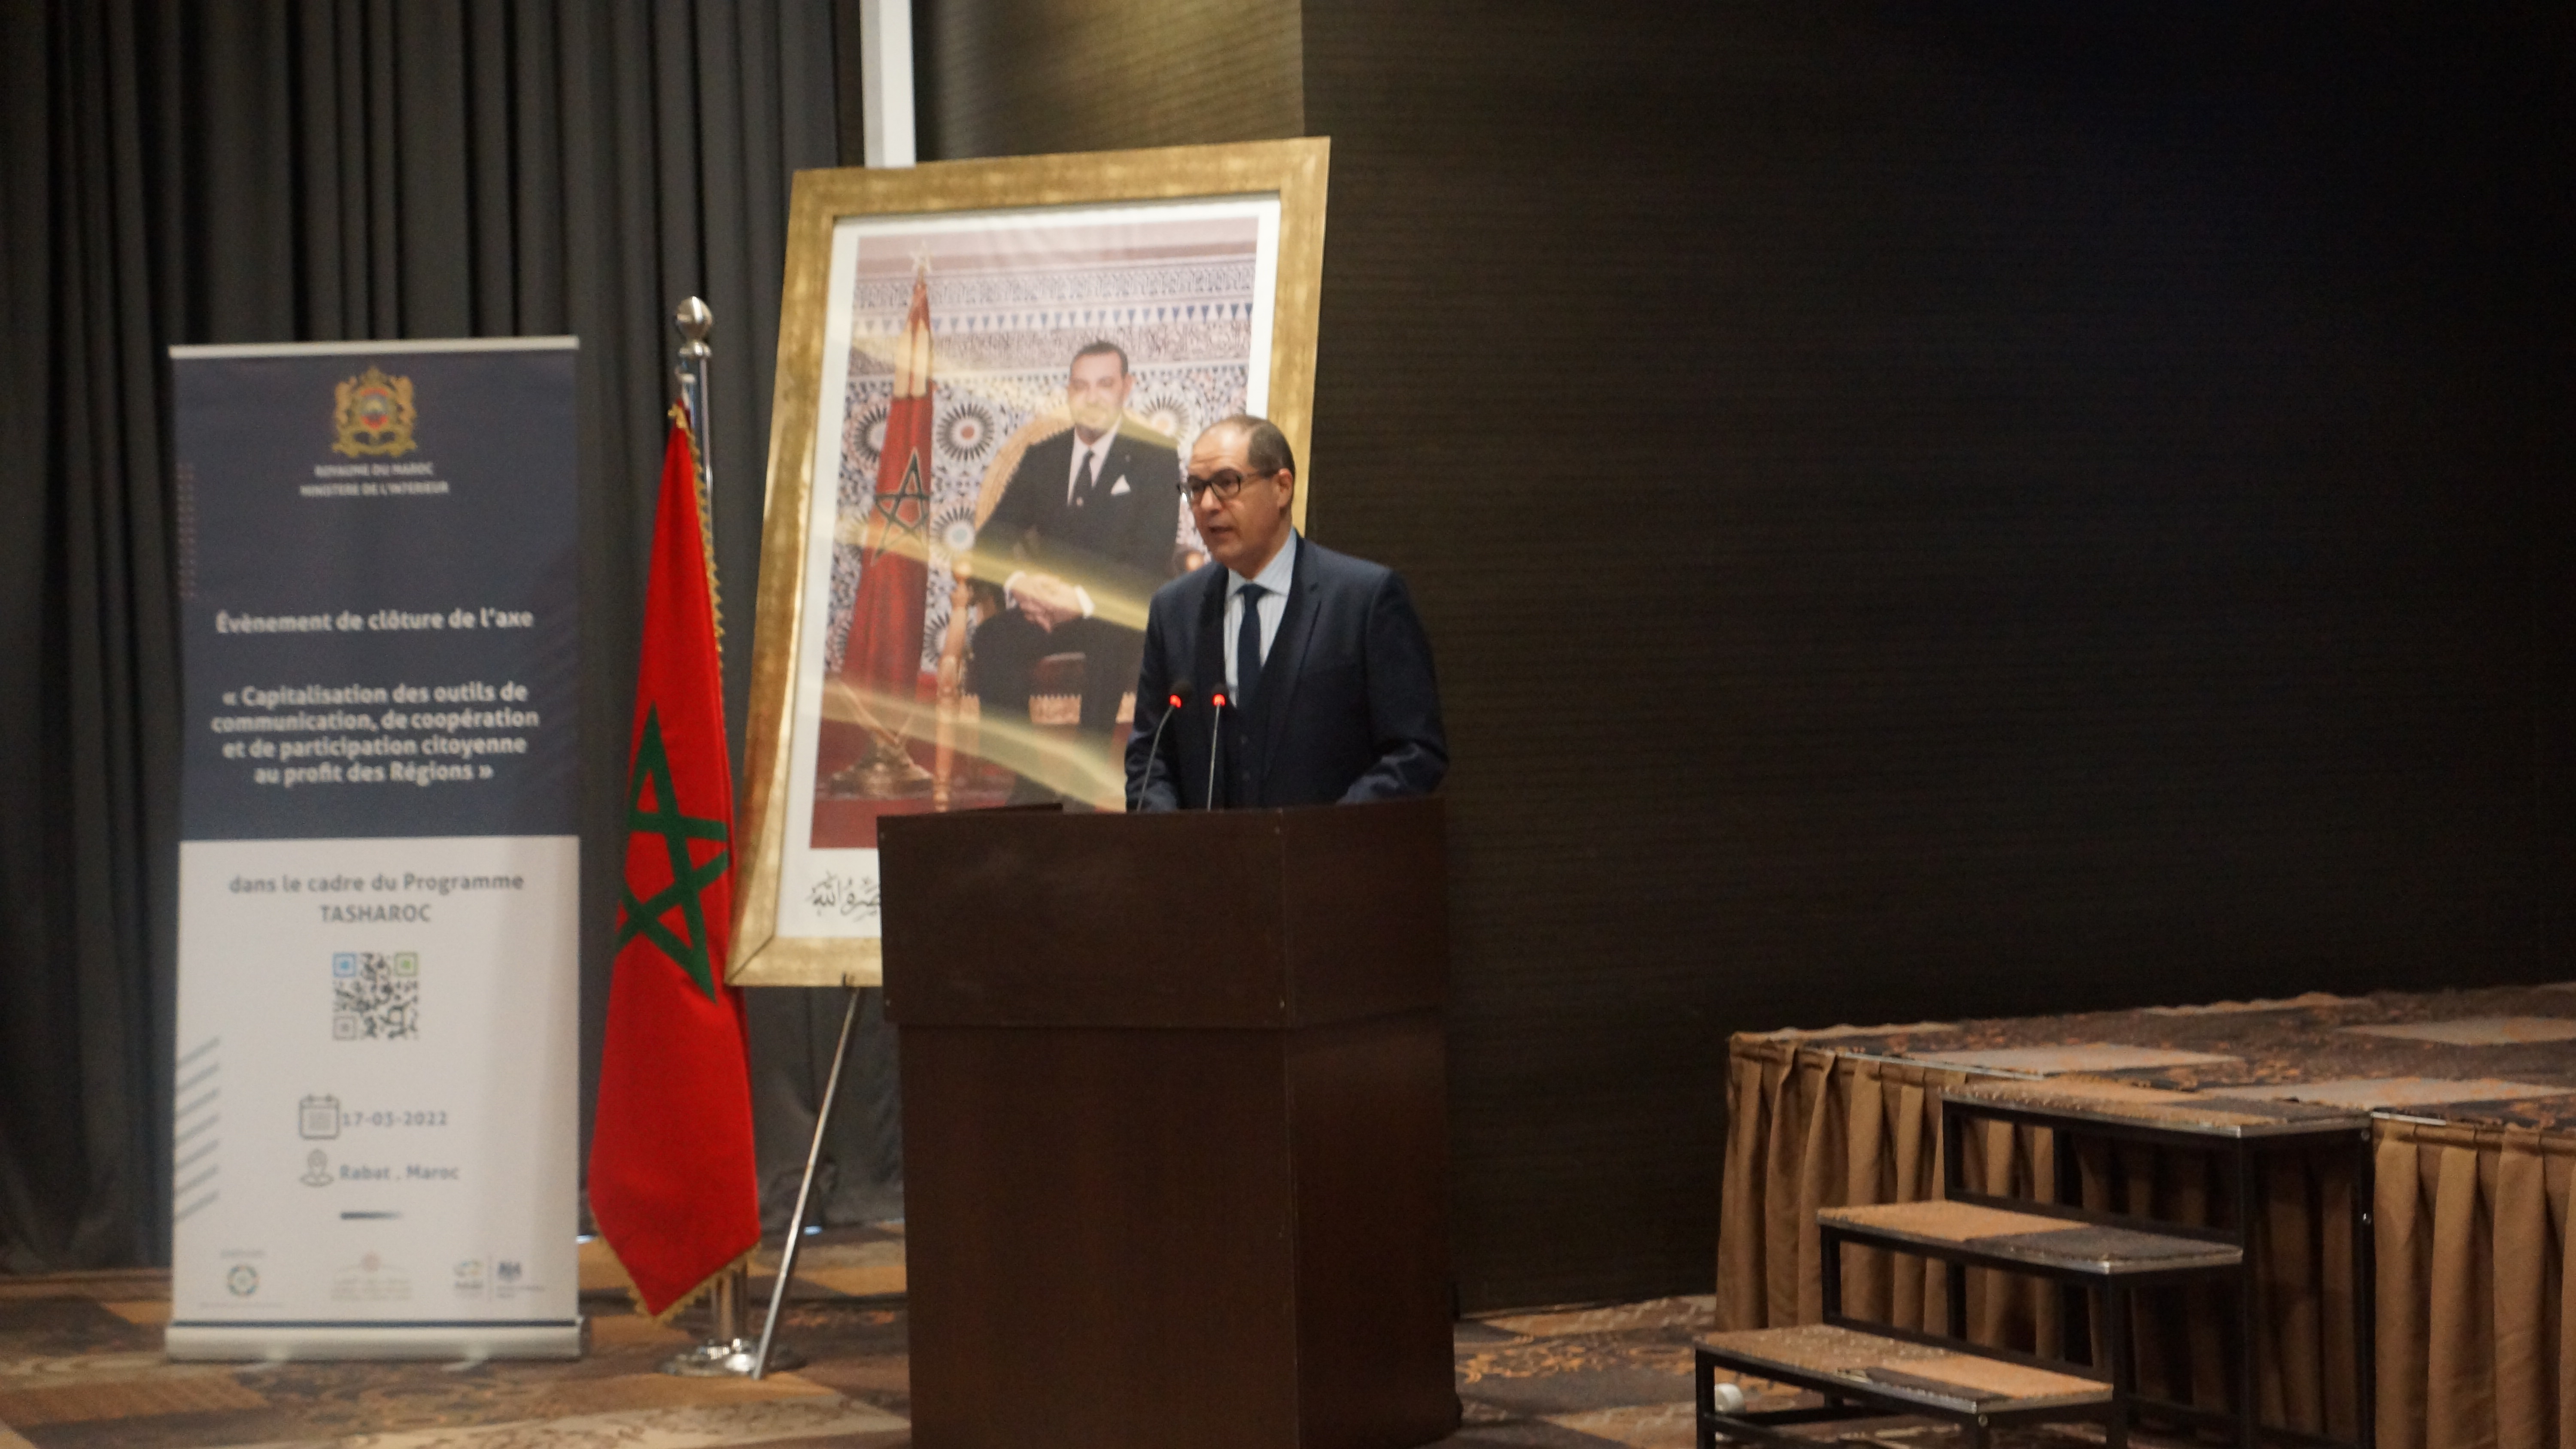 النموذج التنموي المغربي الجديد يكرس مشاركة المواطنين كوسيلة للتحول الاجتماعي